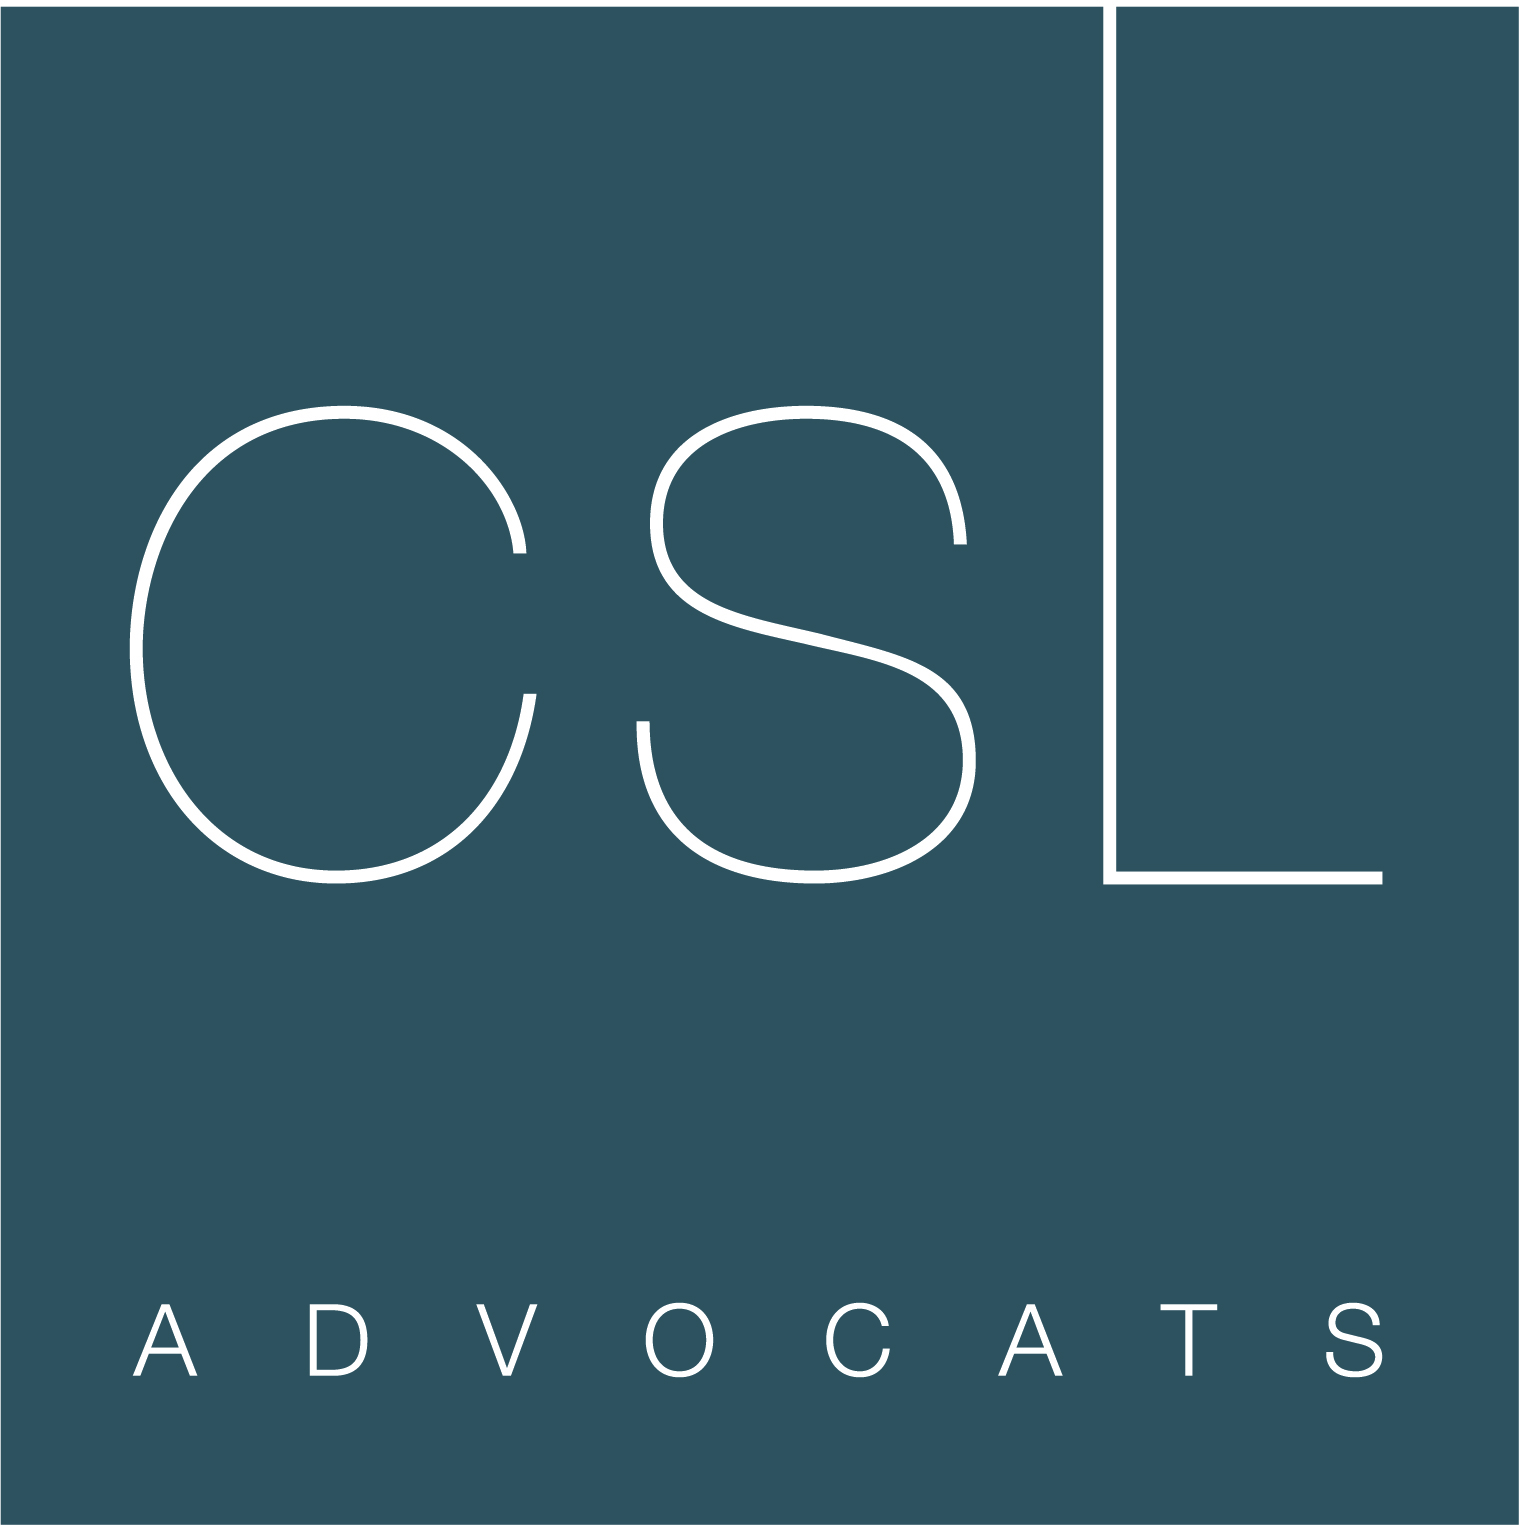 CSL Advocats